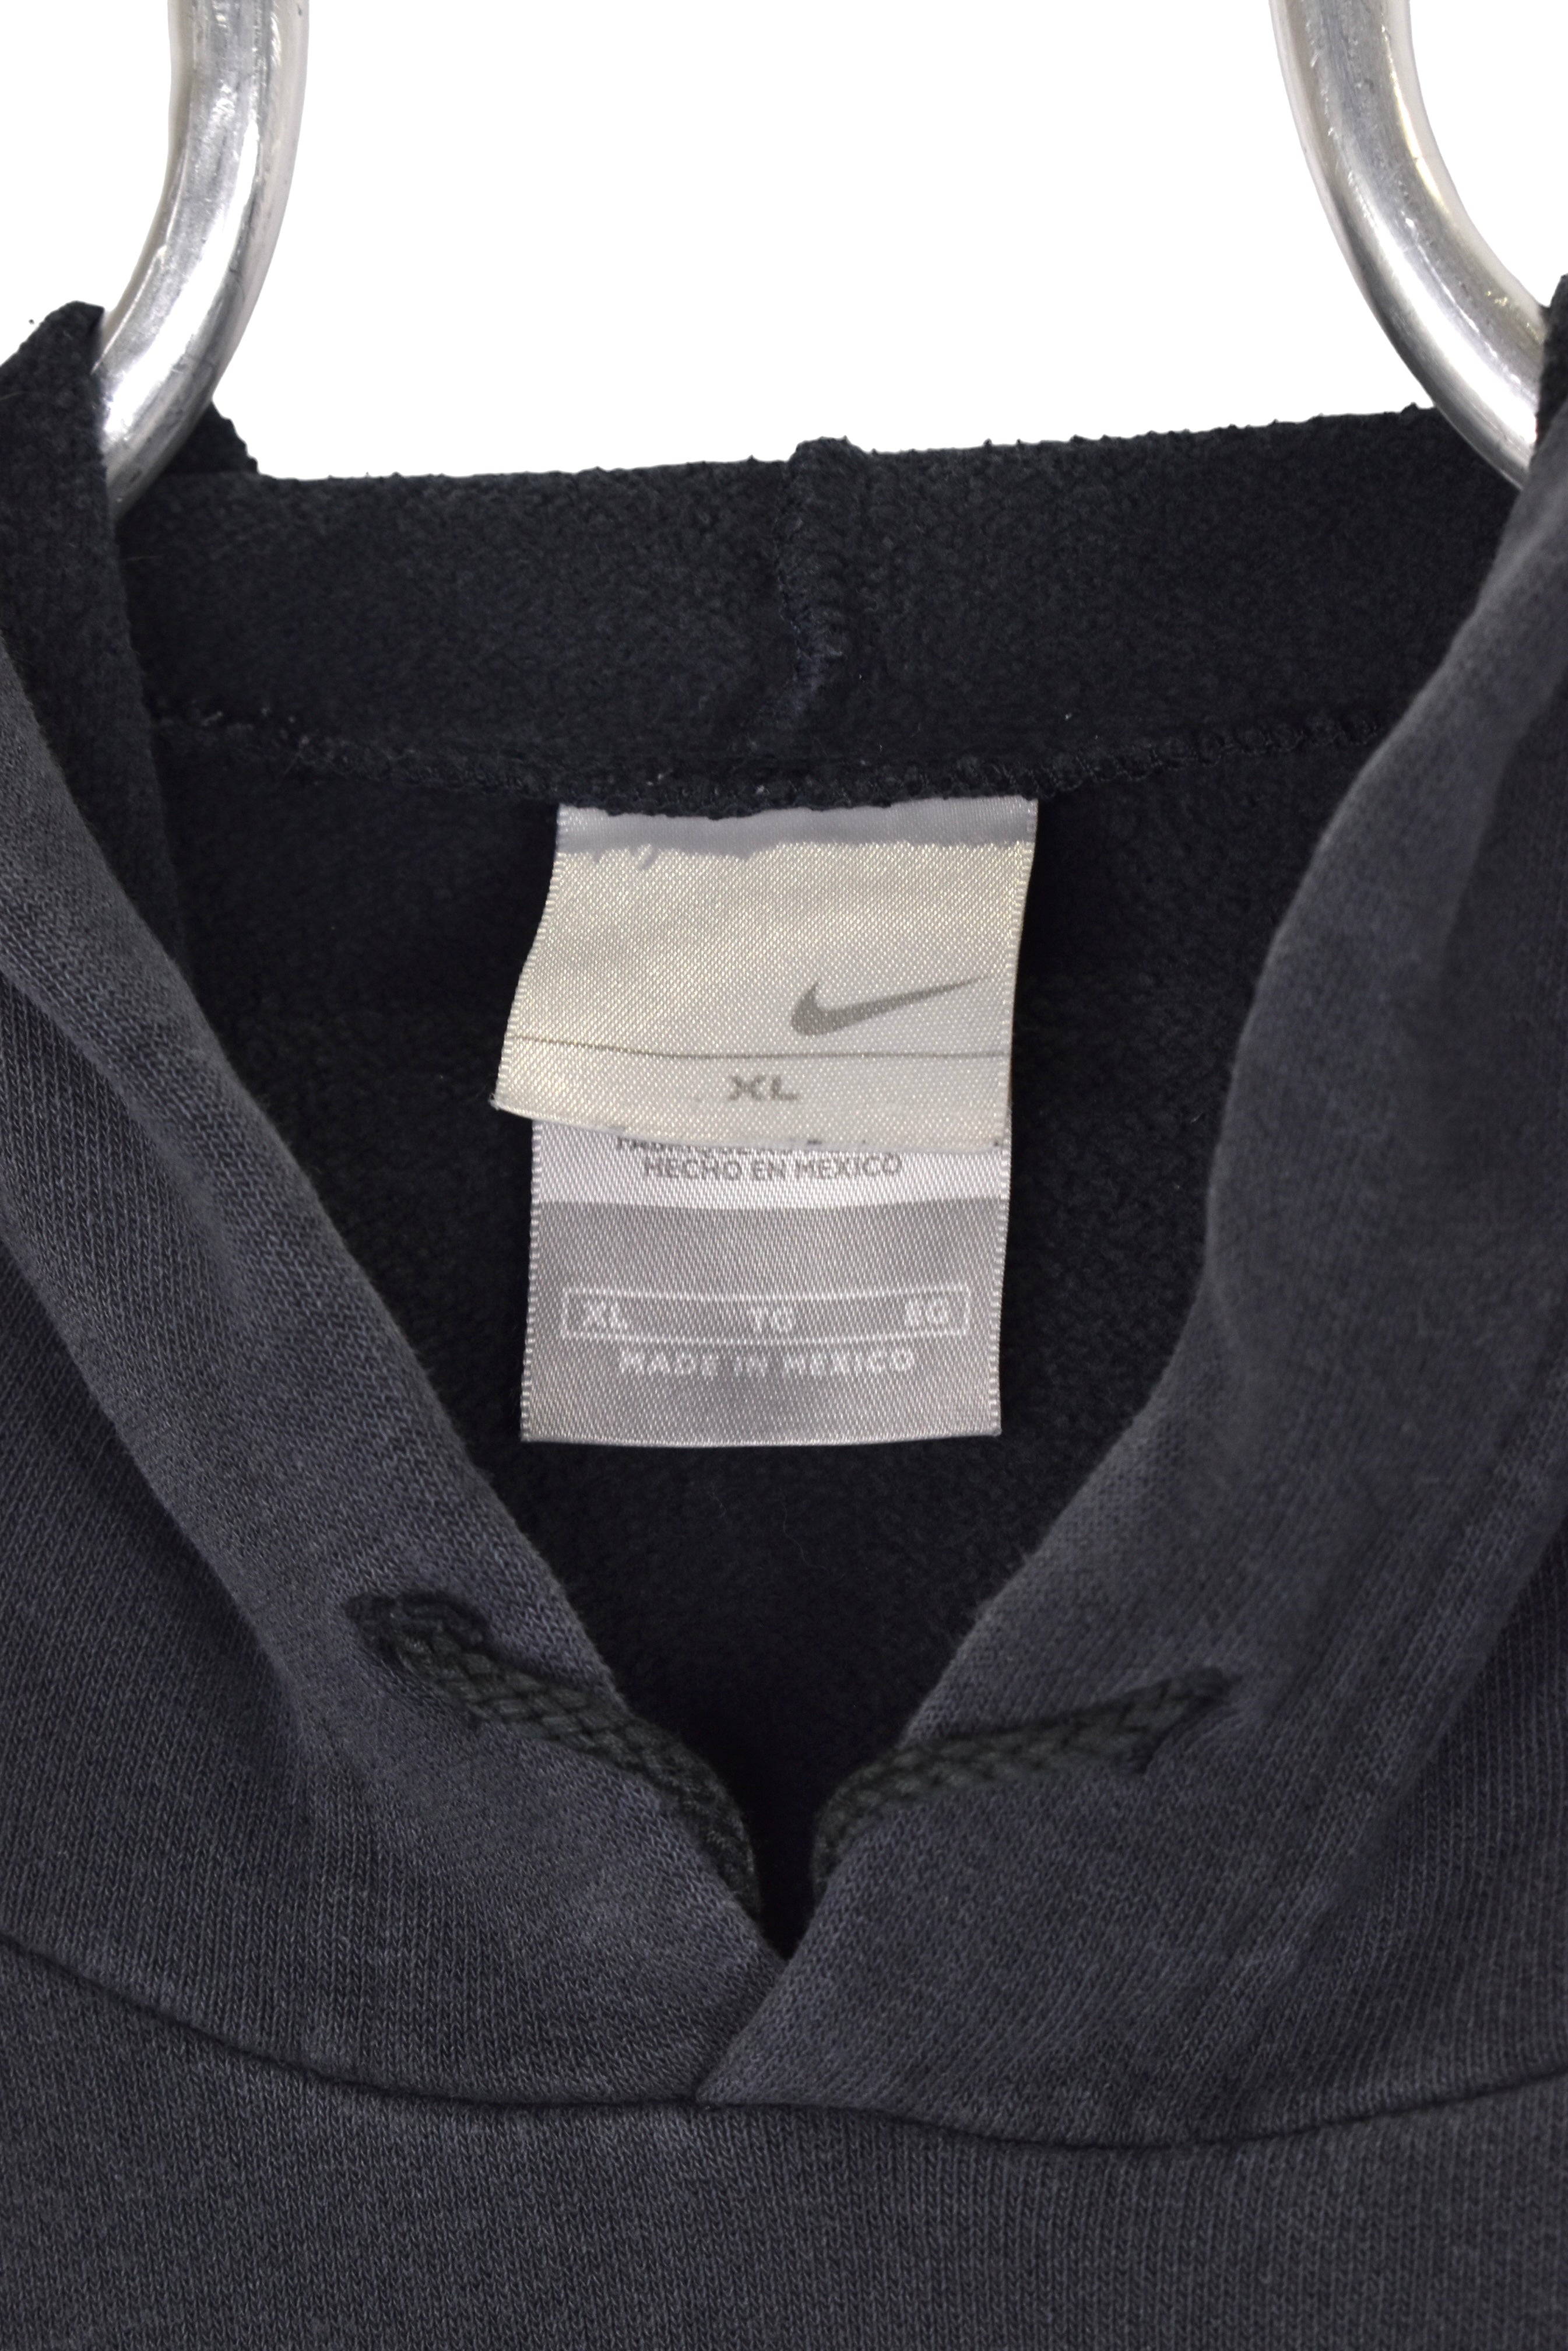 Vintage Nike Air hoodie, black embroidered sweatshirt - XXL